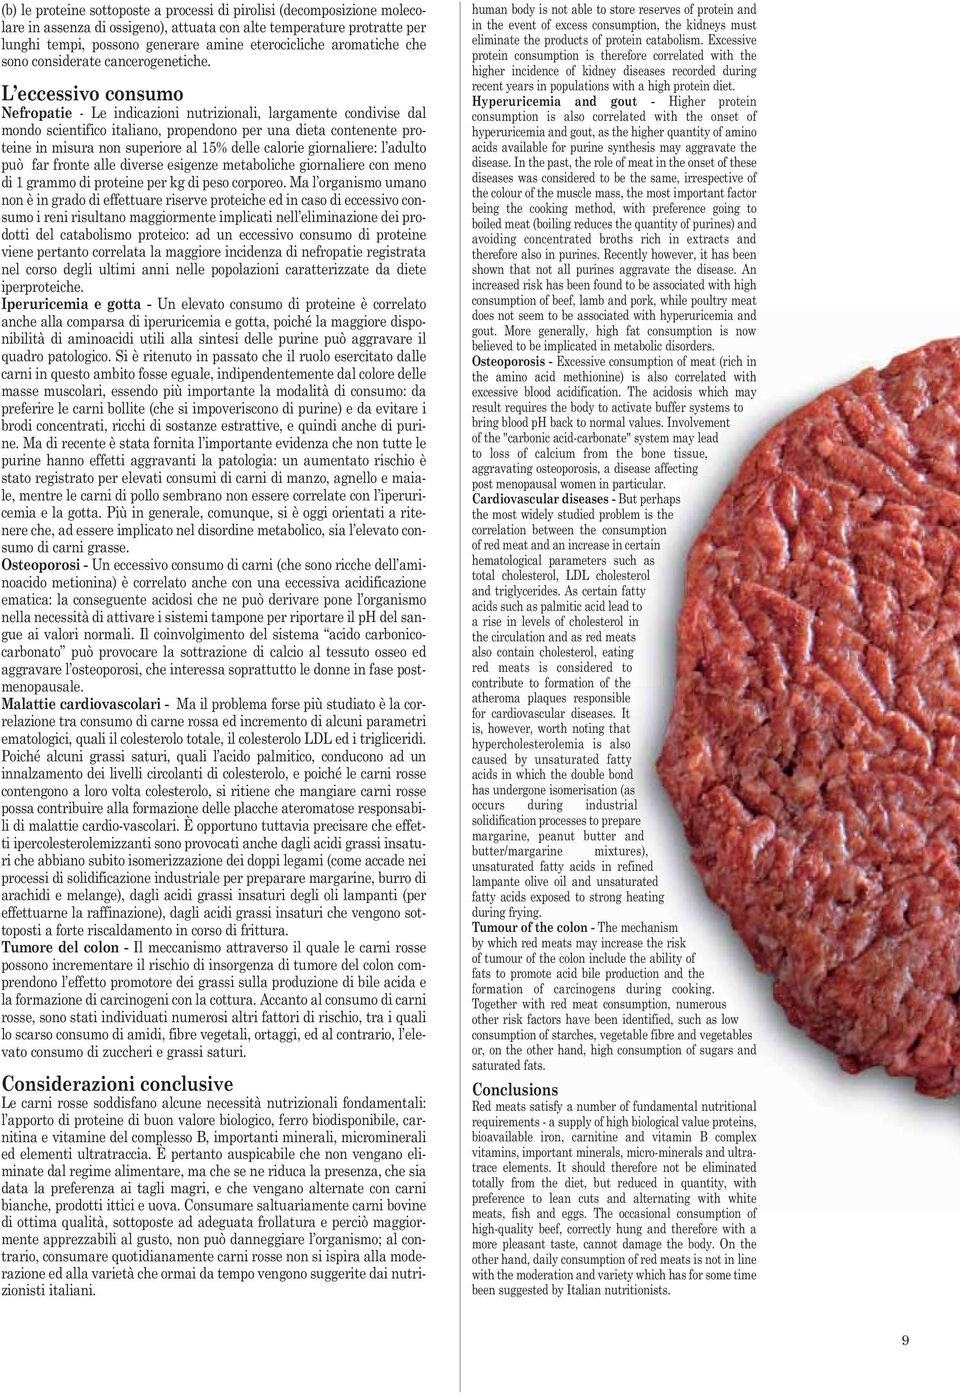 L eccessivo consumo Nefropatie - Le indicazioni nutrizionali, largamente condivise dal mondo scientifico italiano, propendono per una dieta contenente proteine in misura non superiore al 15% delle